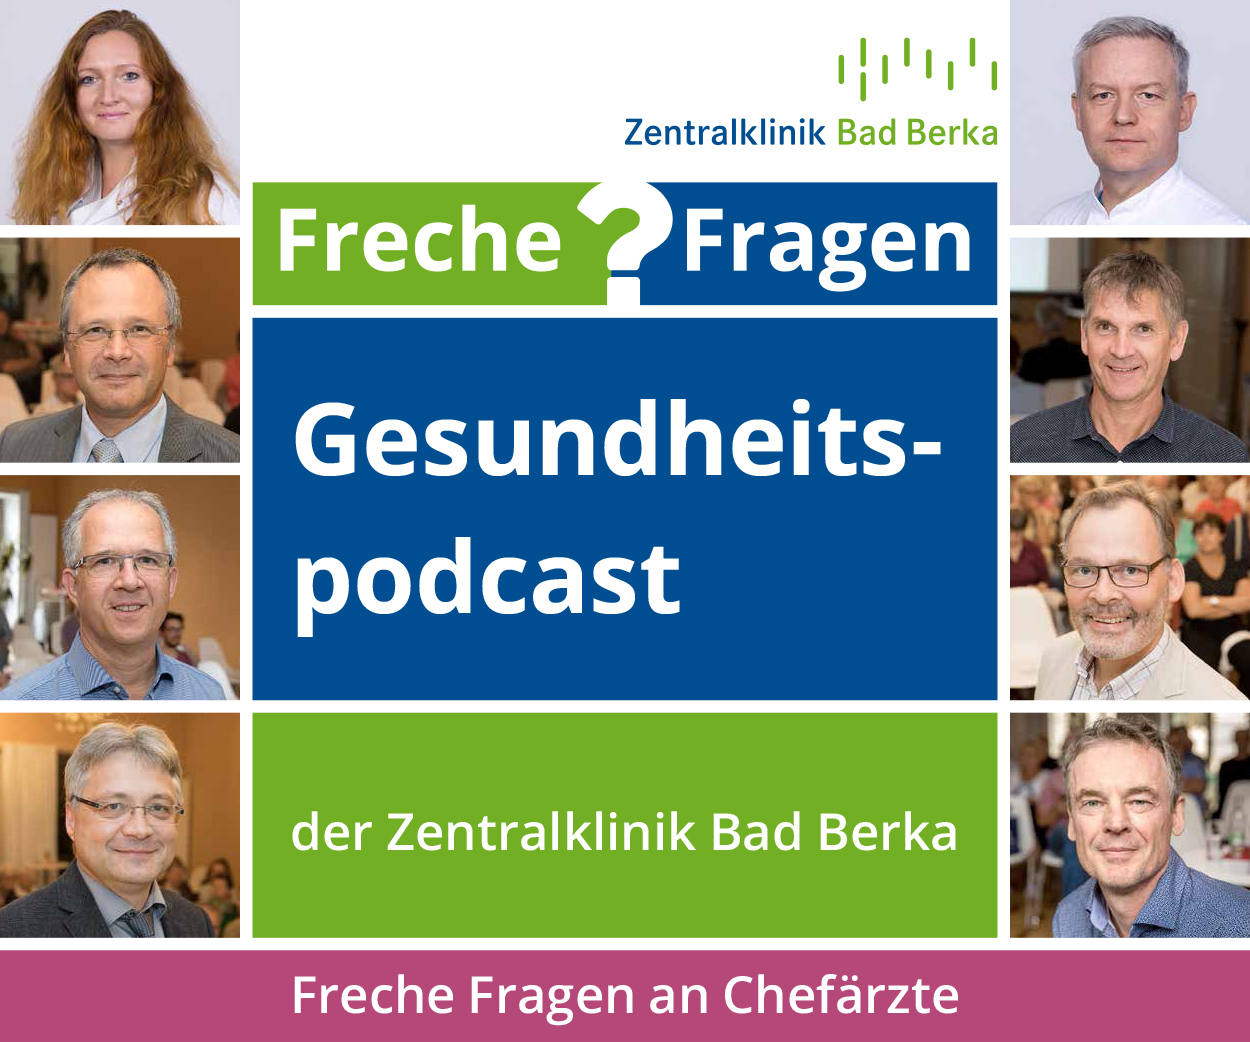 Mediengruppe Thüringen veröffentlicht Gesundheitspodcast